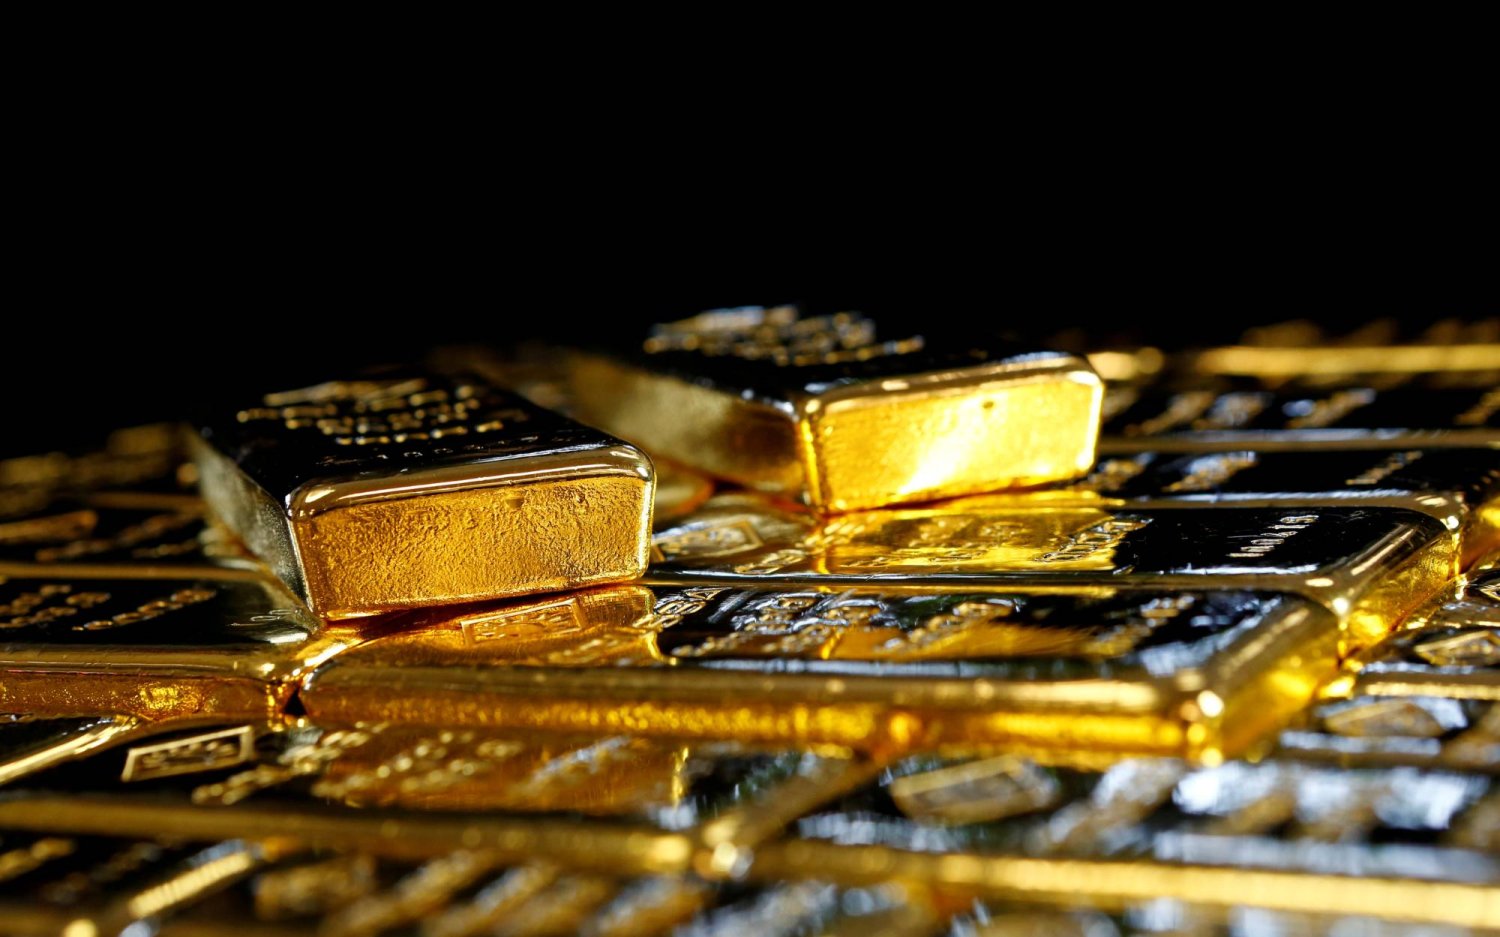 سبائك الذهب في مصنع فصل الذهب والفضة النمساوي «أوغوسا» في فيينا بالنمسا (رويترز)